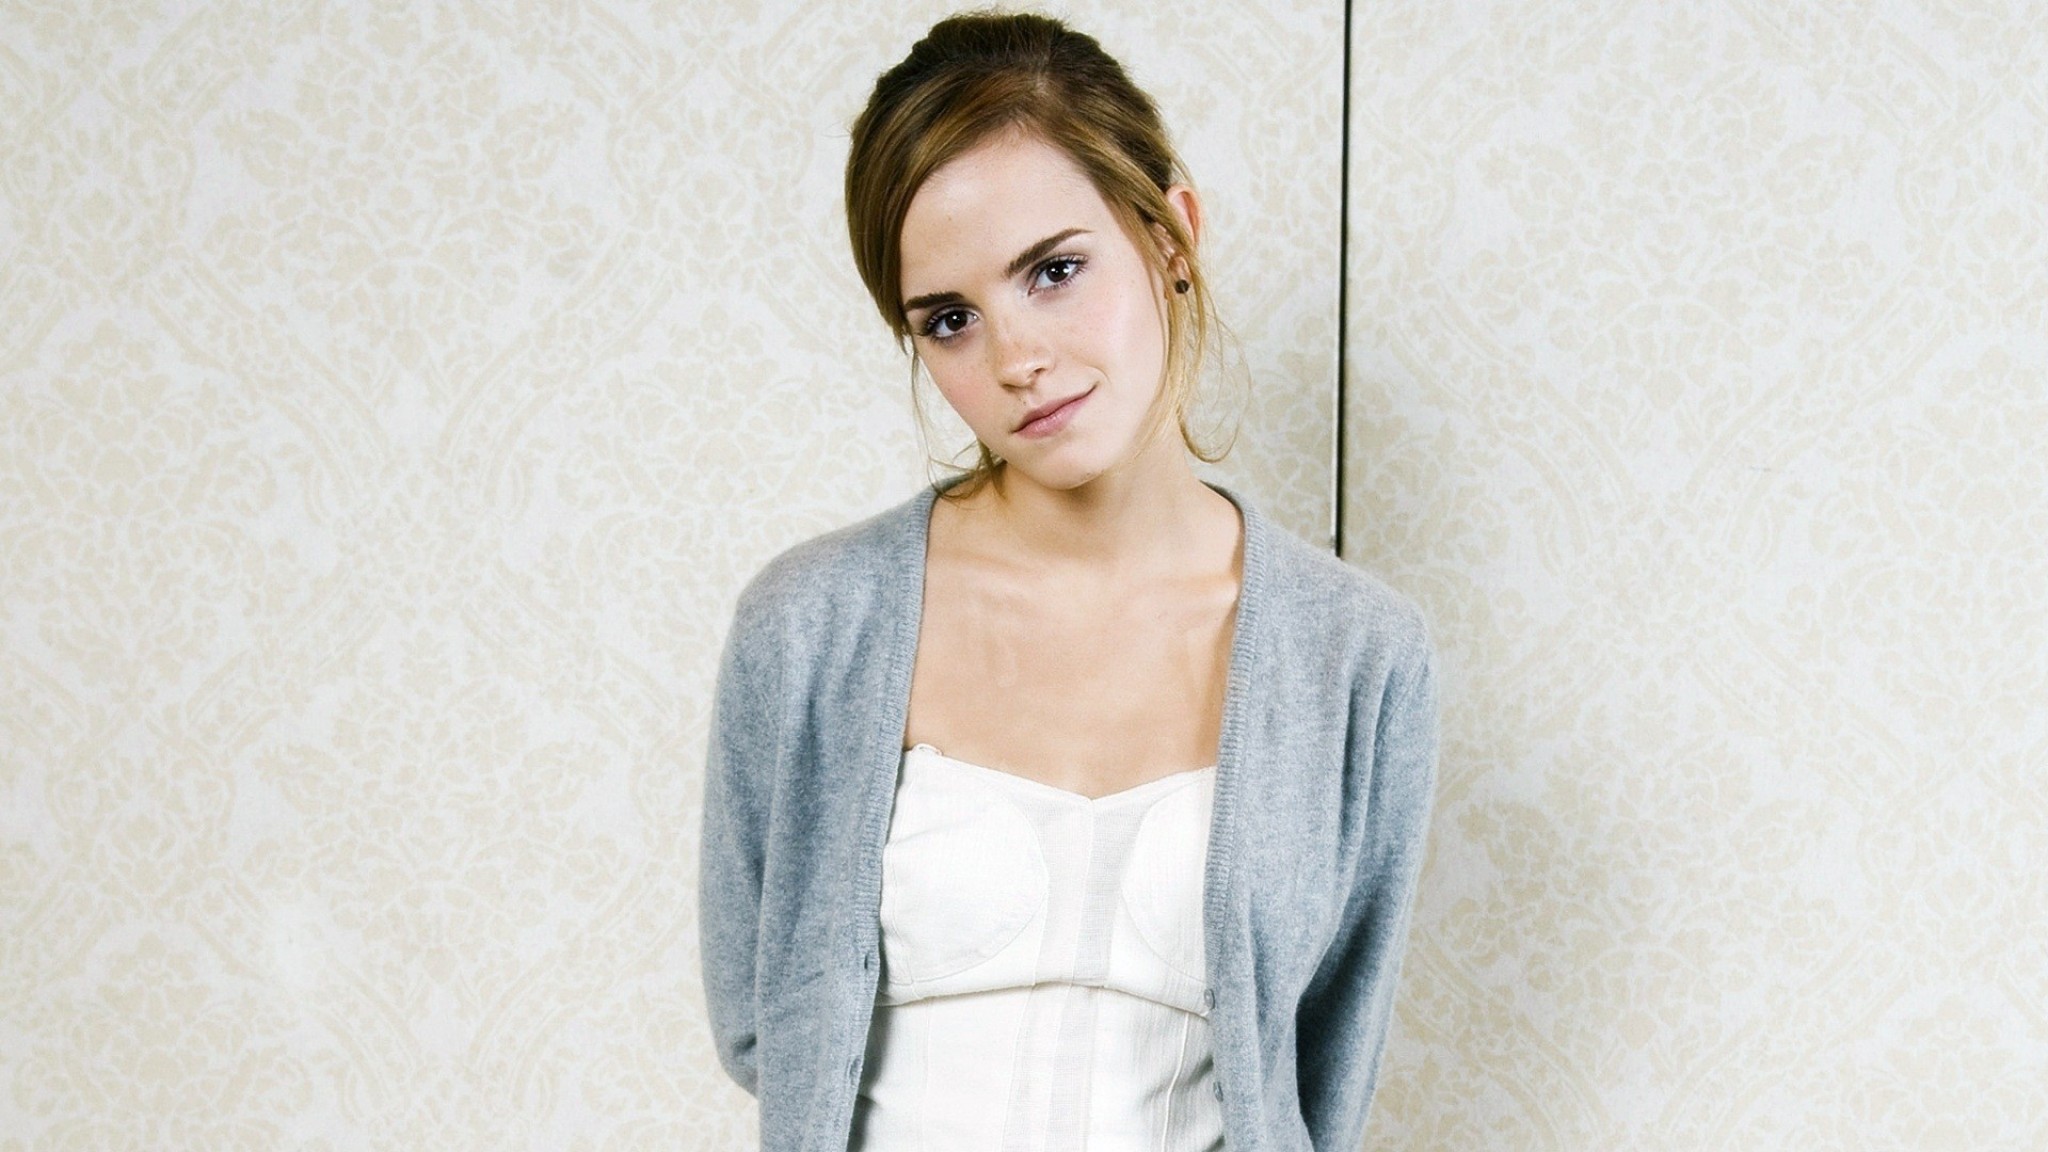 People 2048x1152 women portrait actress celebrity open sweater sweater grey sweater Emma Watson